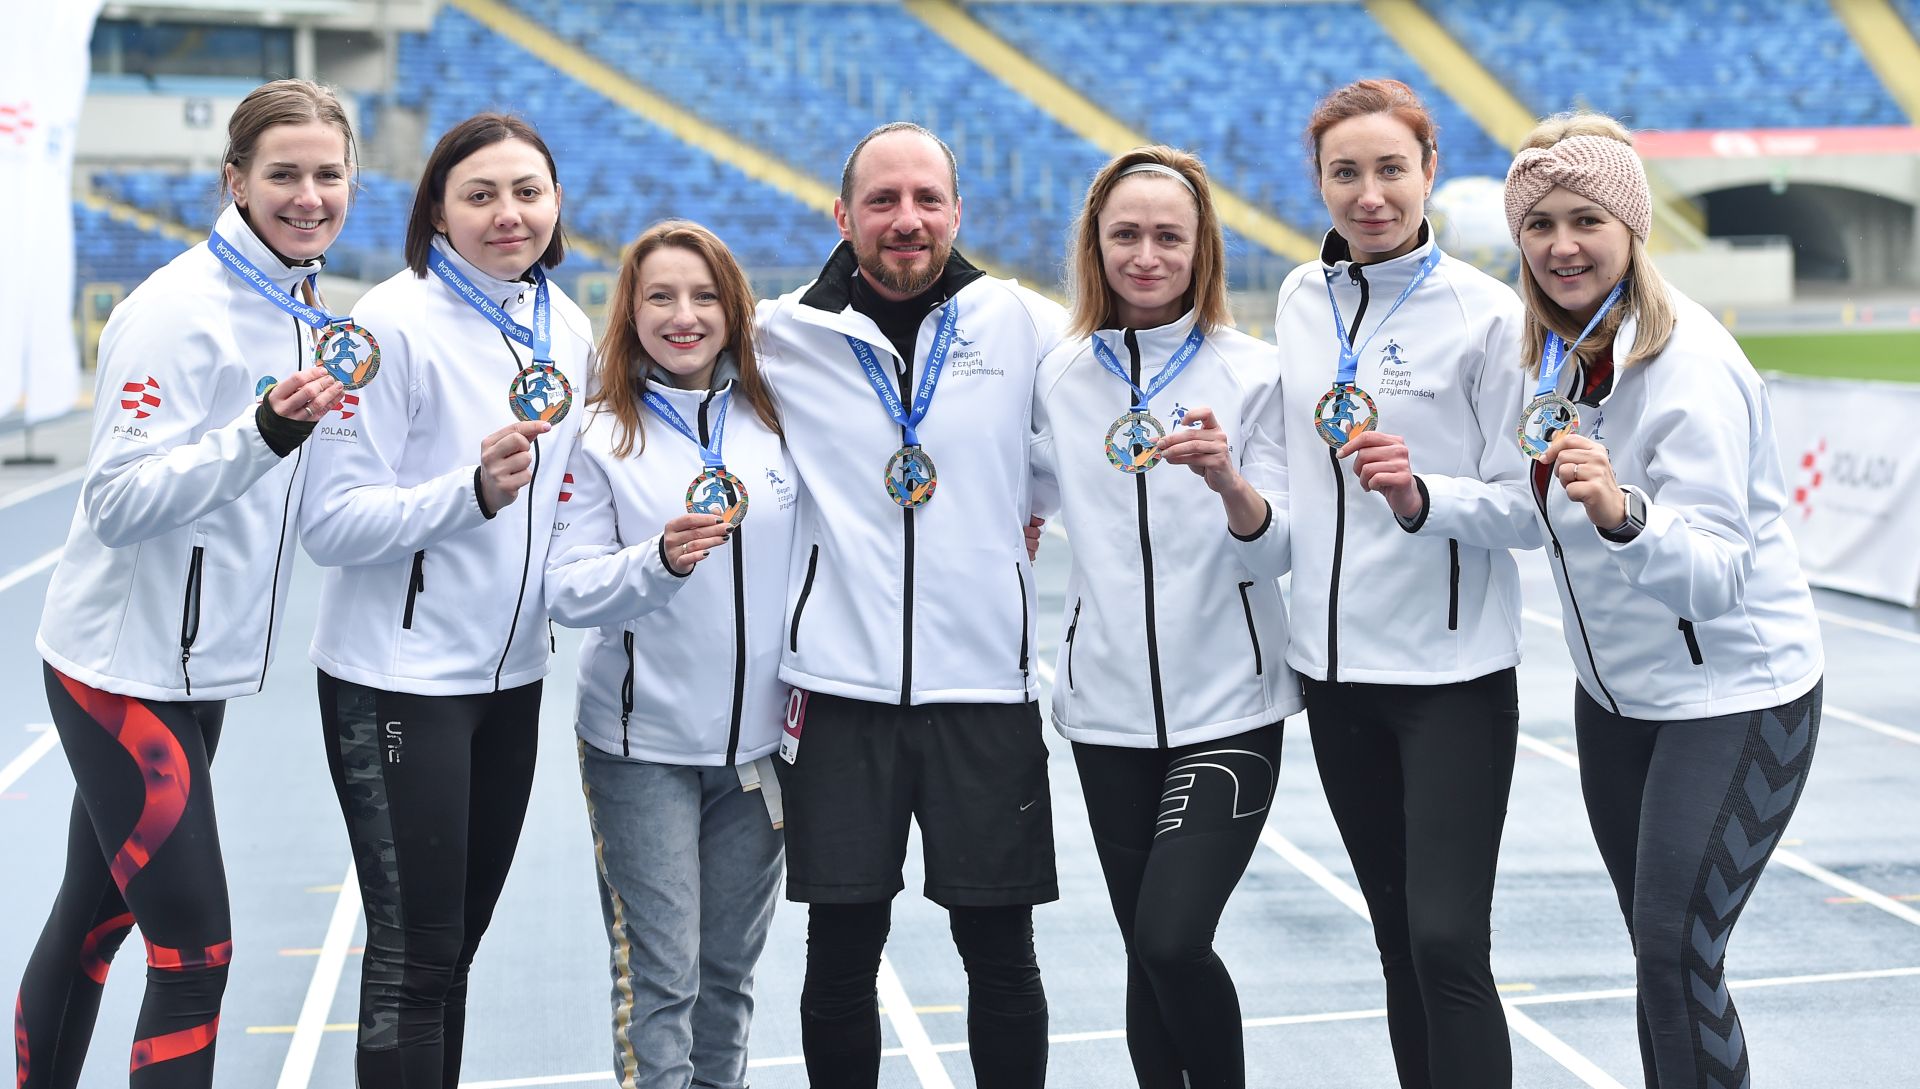 Fot. Press Focus/Marcin Bulanda. Medale symbolicznie wspierały obywateli Ukrainy